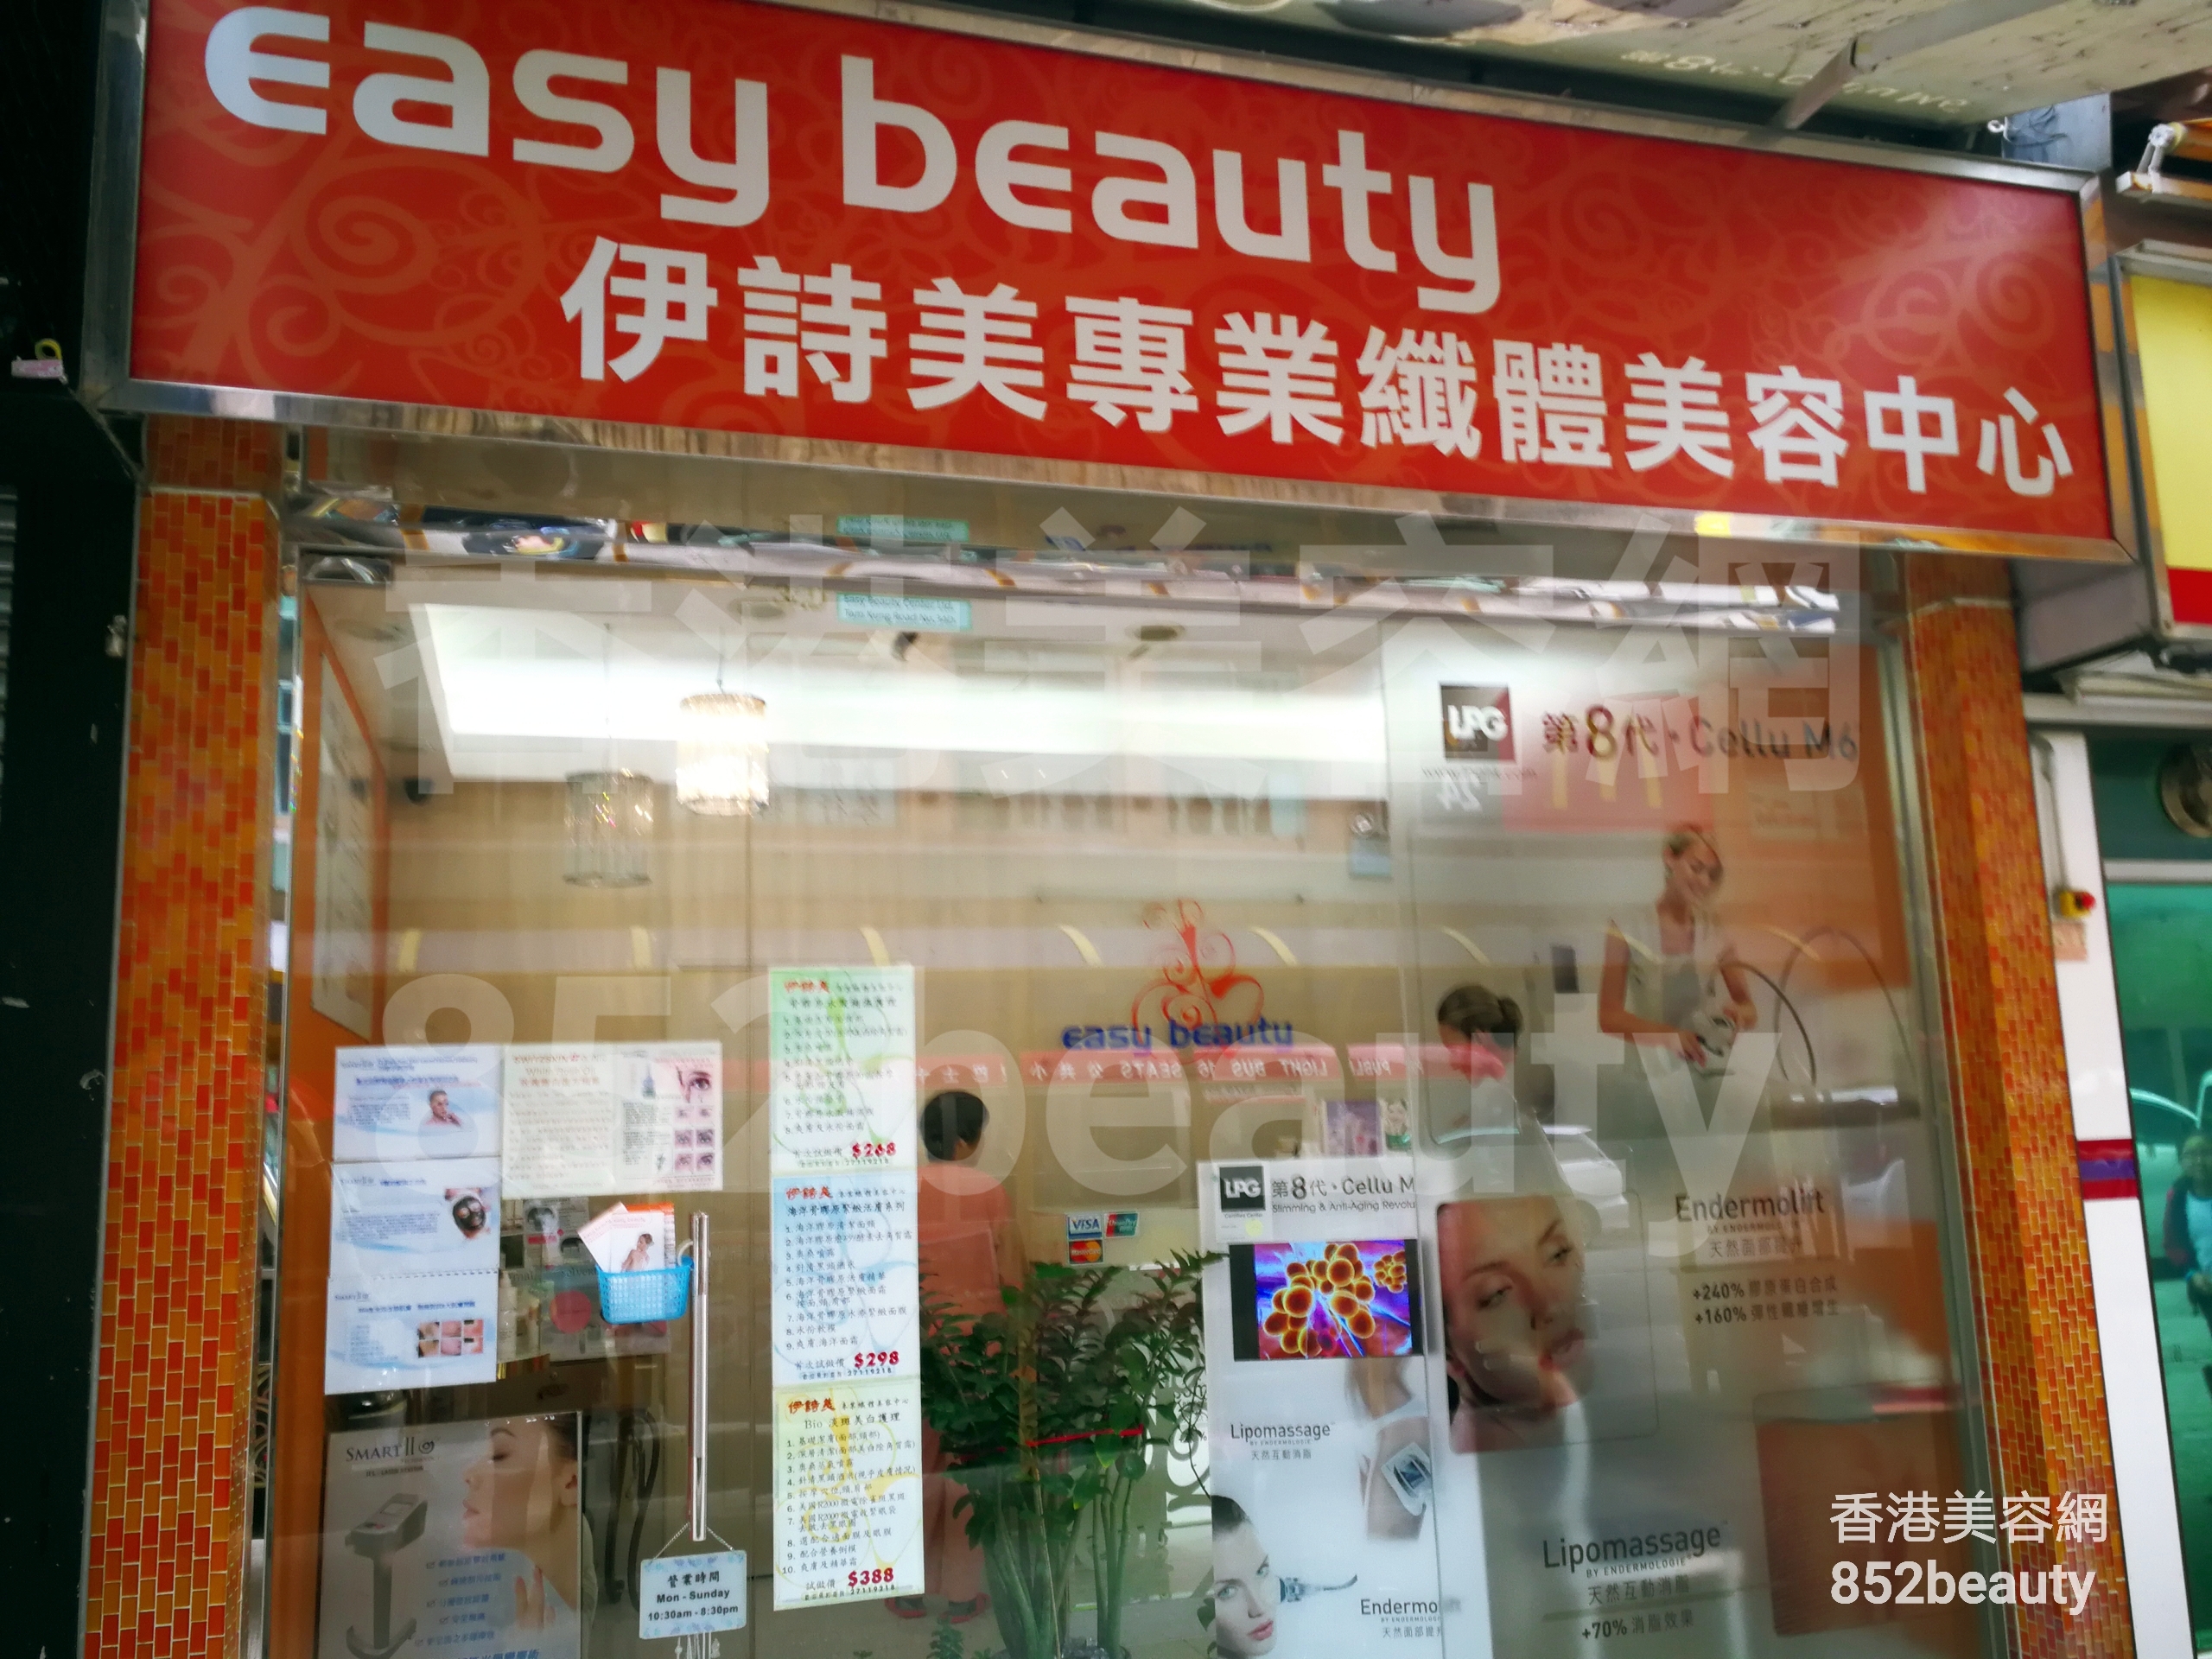 面部護理: Easy beauty 伊詩美專業纖體美容中心